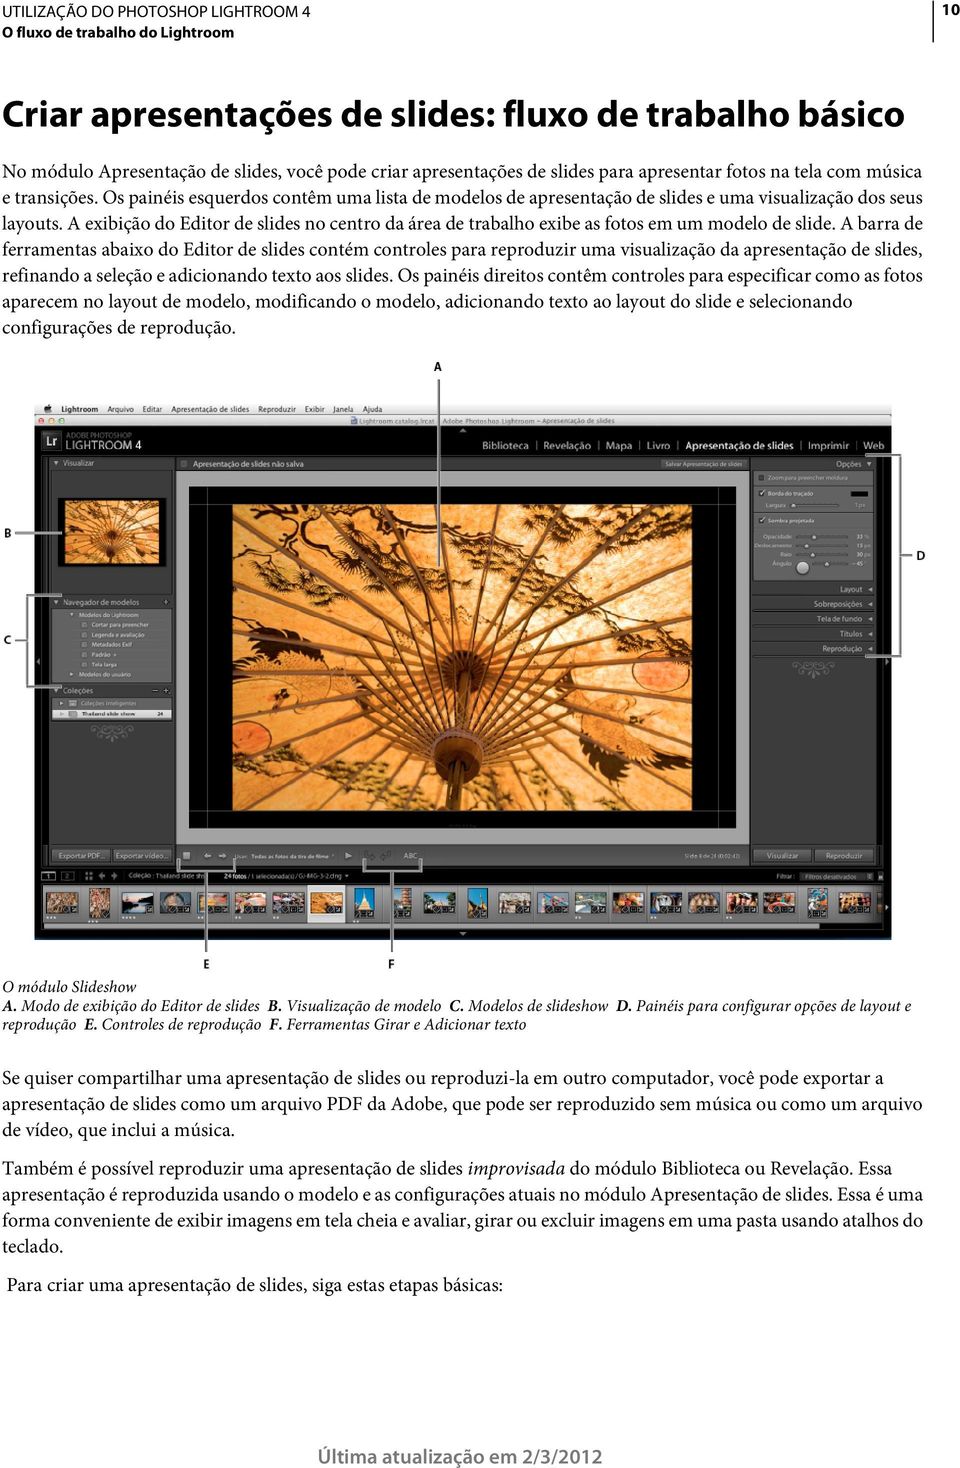 A exibição do Editor de slides no centro da área de trabalho exibe as fotos em um modelo de slide.